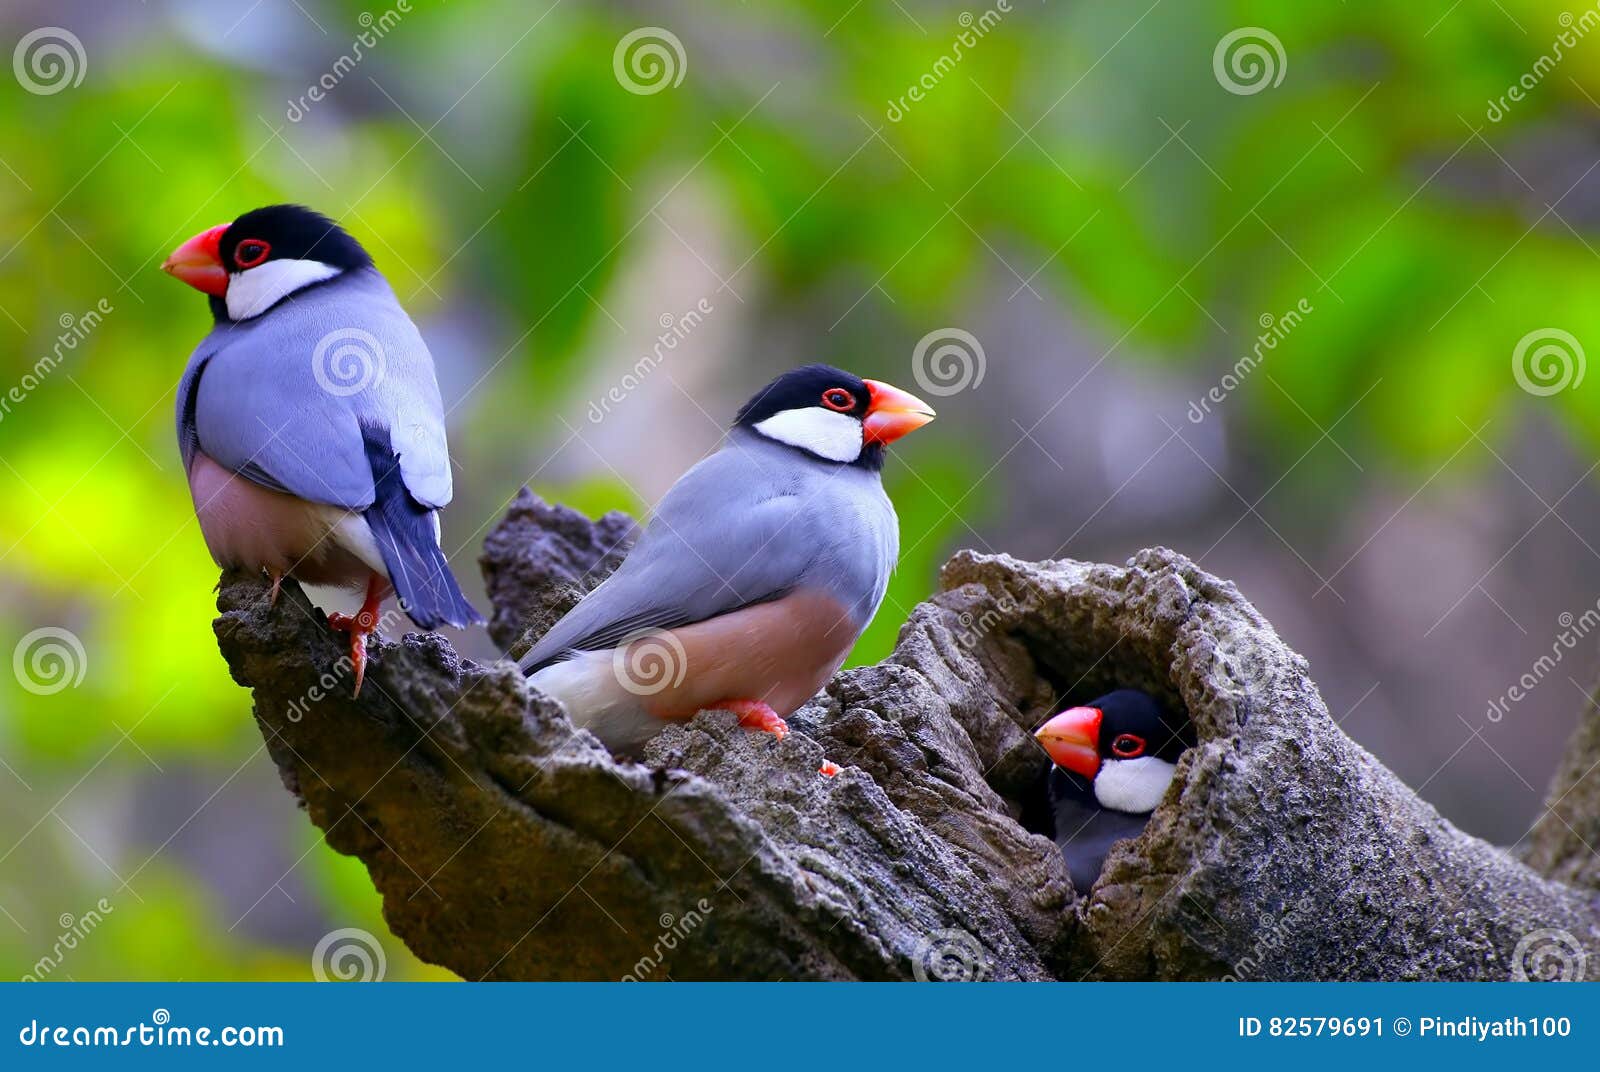 java sparrow birds